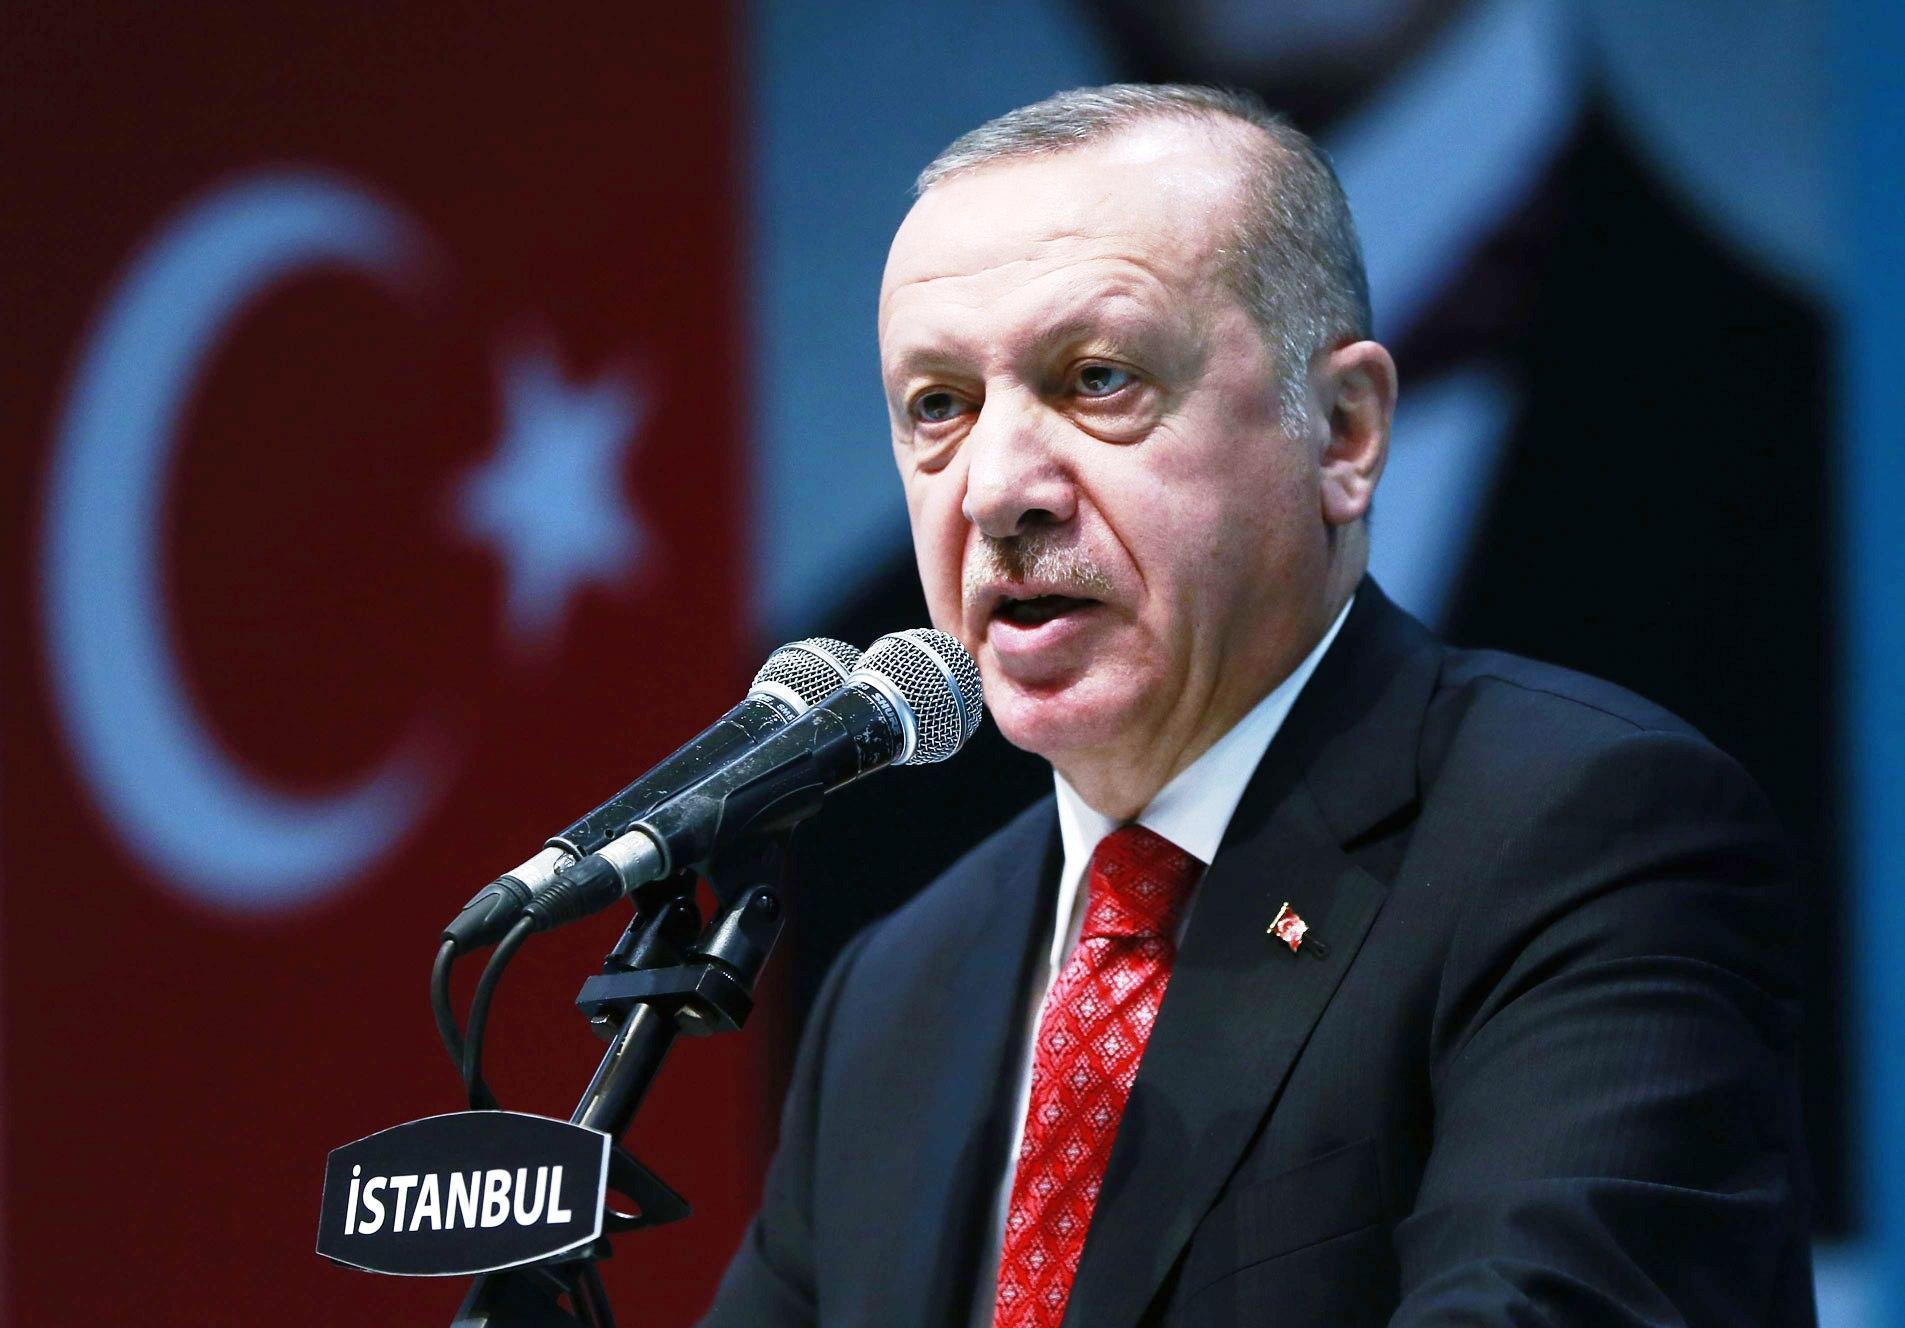 تركيا تحولت الى جزء من الازمة في ملف قره باغ بسبب مواقفها التصعيدية